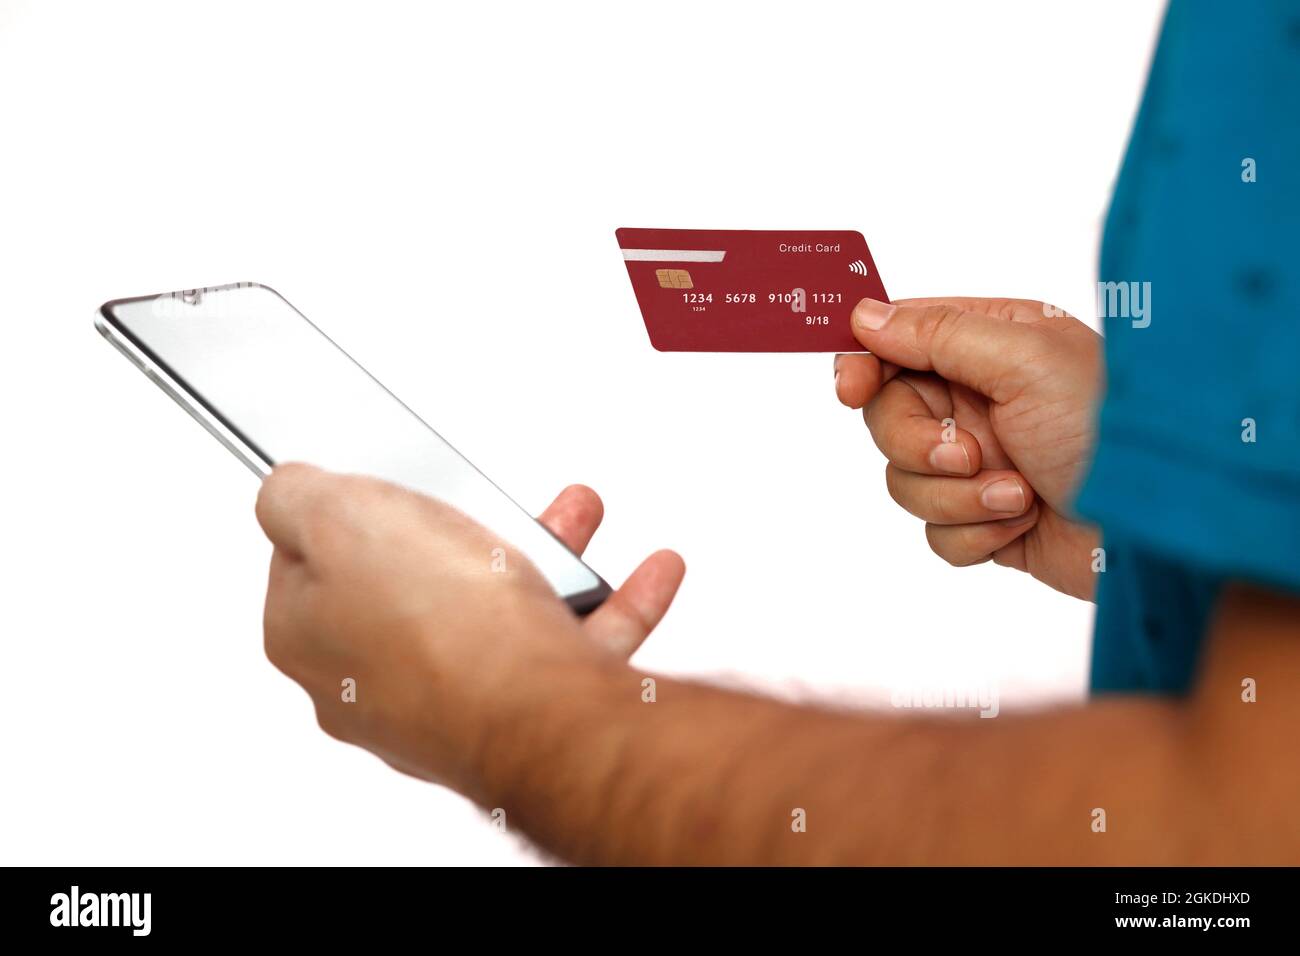 Pagamento Online,l'uomo con le mani in mano in possesso di una carta di credito e utilizzo di smart phone per lo shopping online. Foto Stock